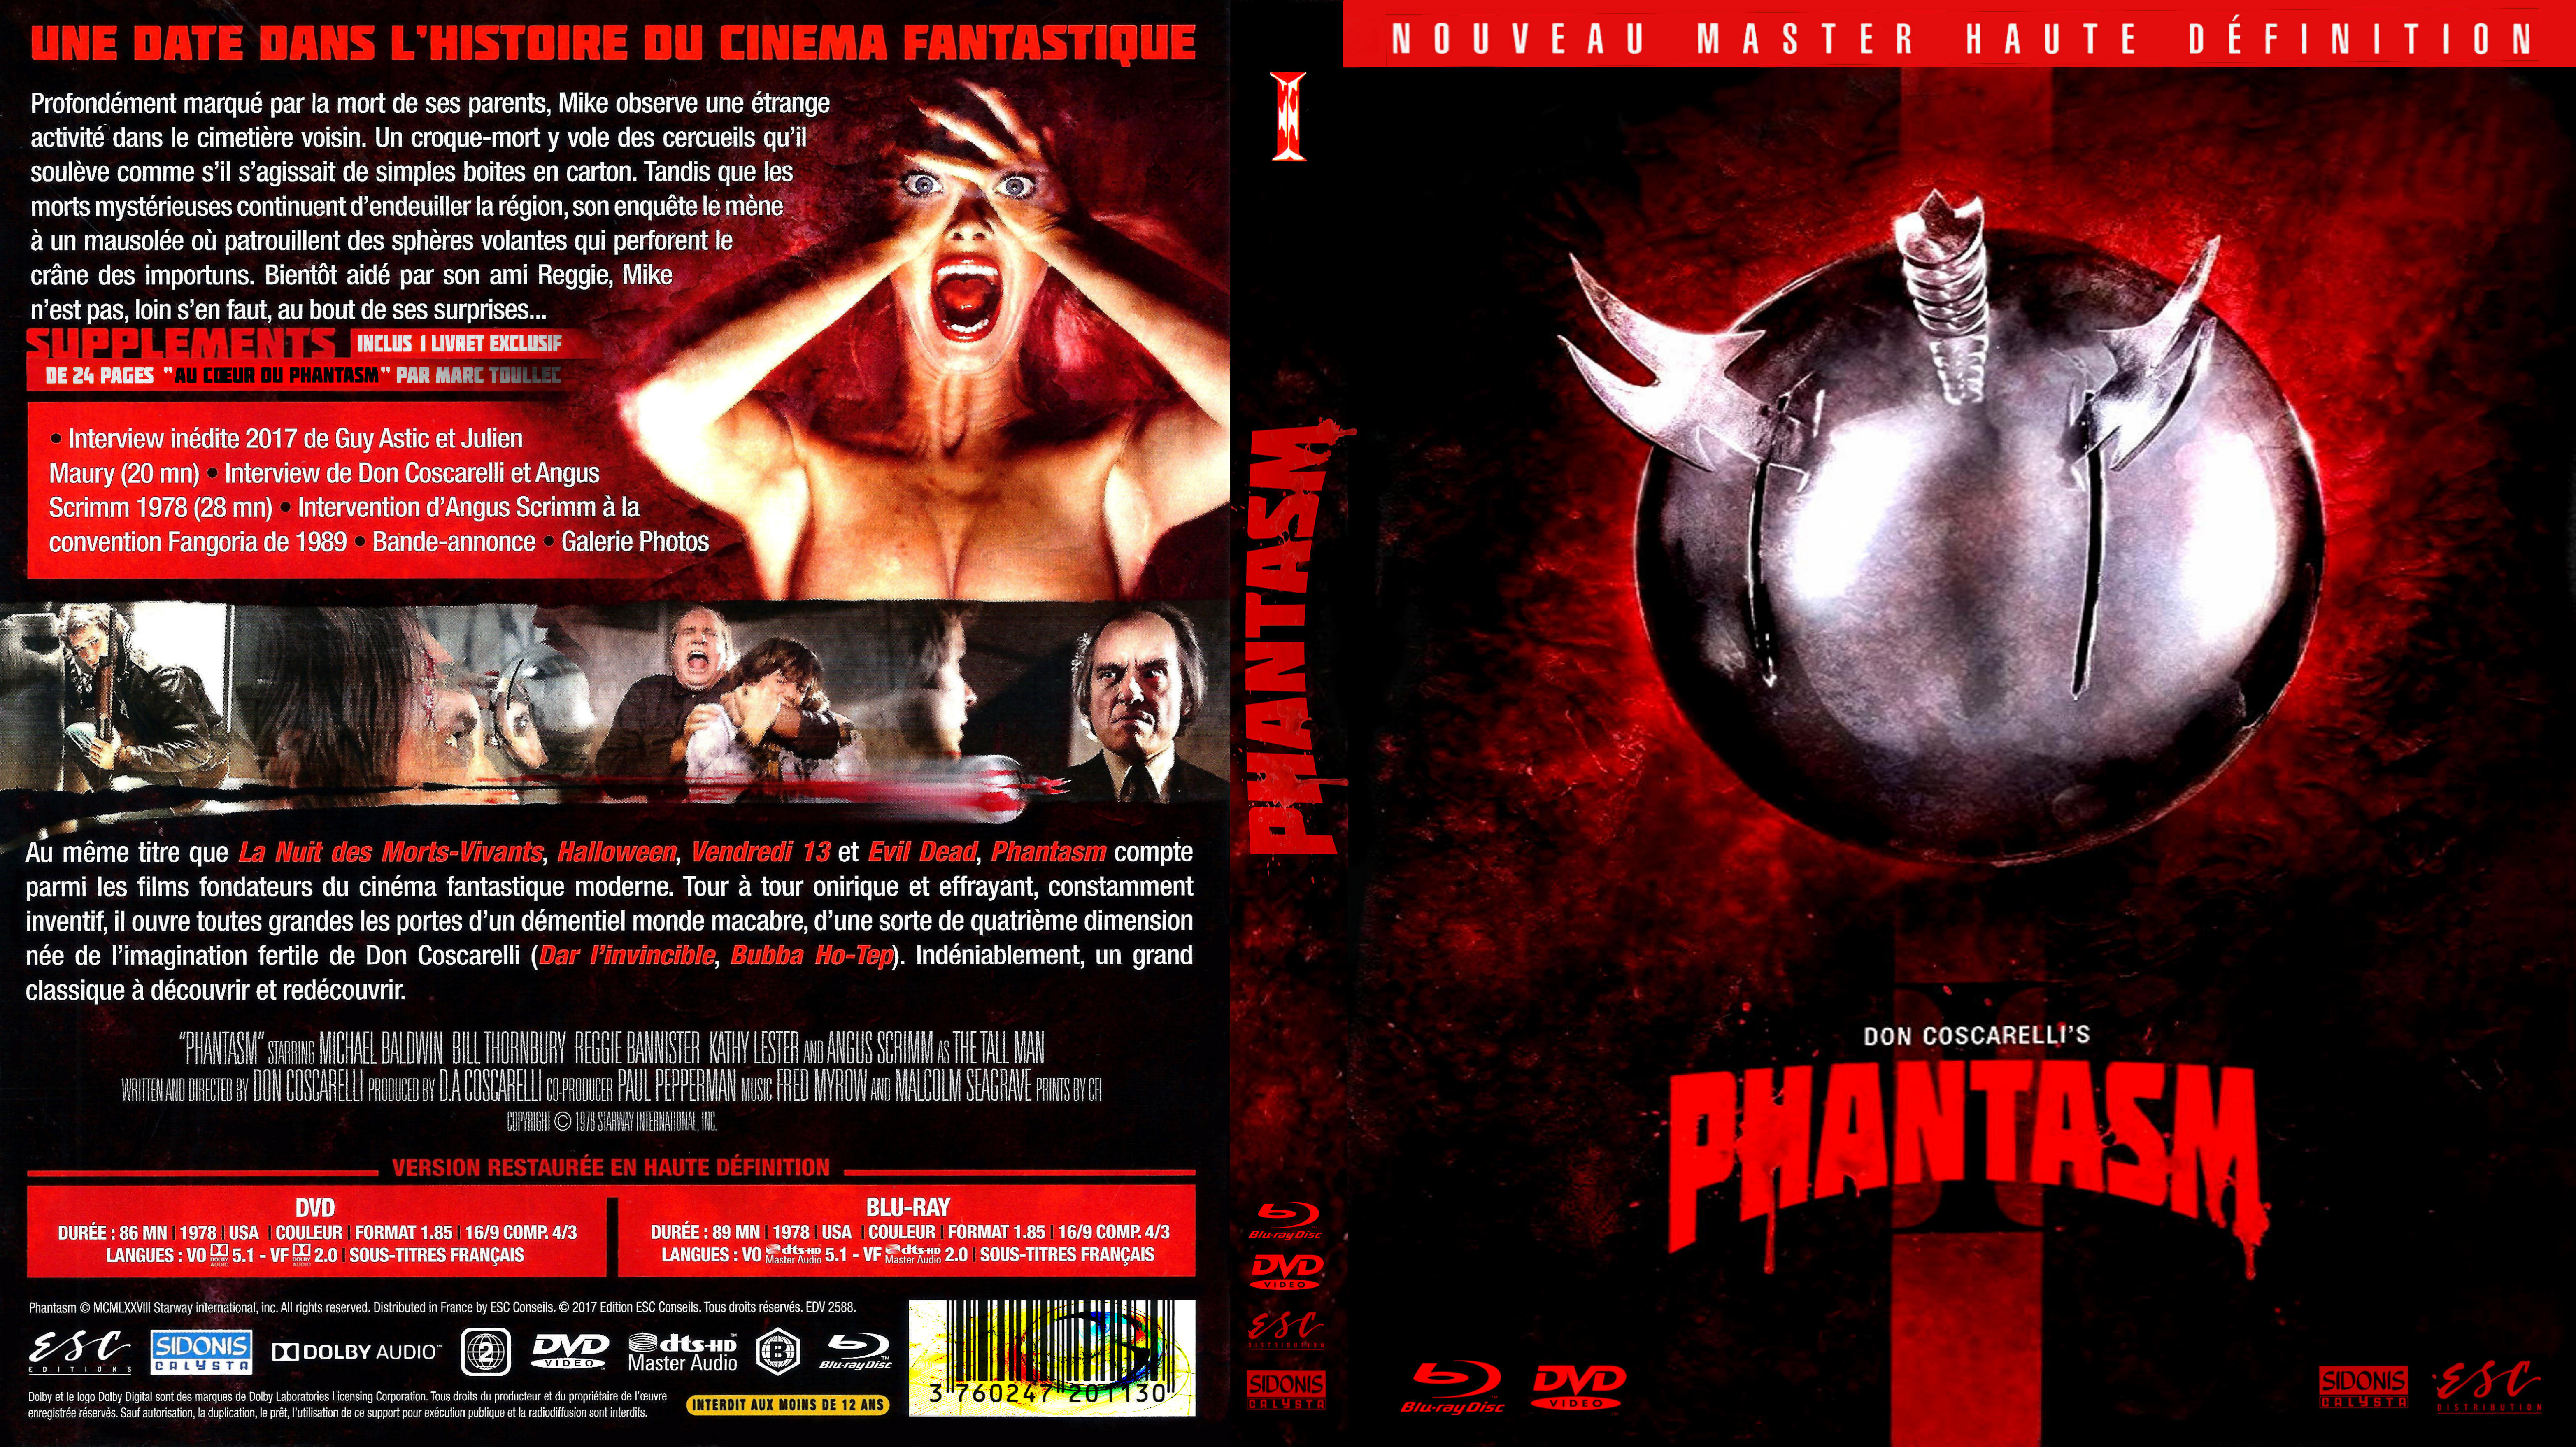 Jaquette DVD Phantasm 1 custom (BLU-RAY)